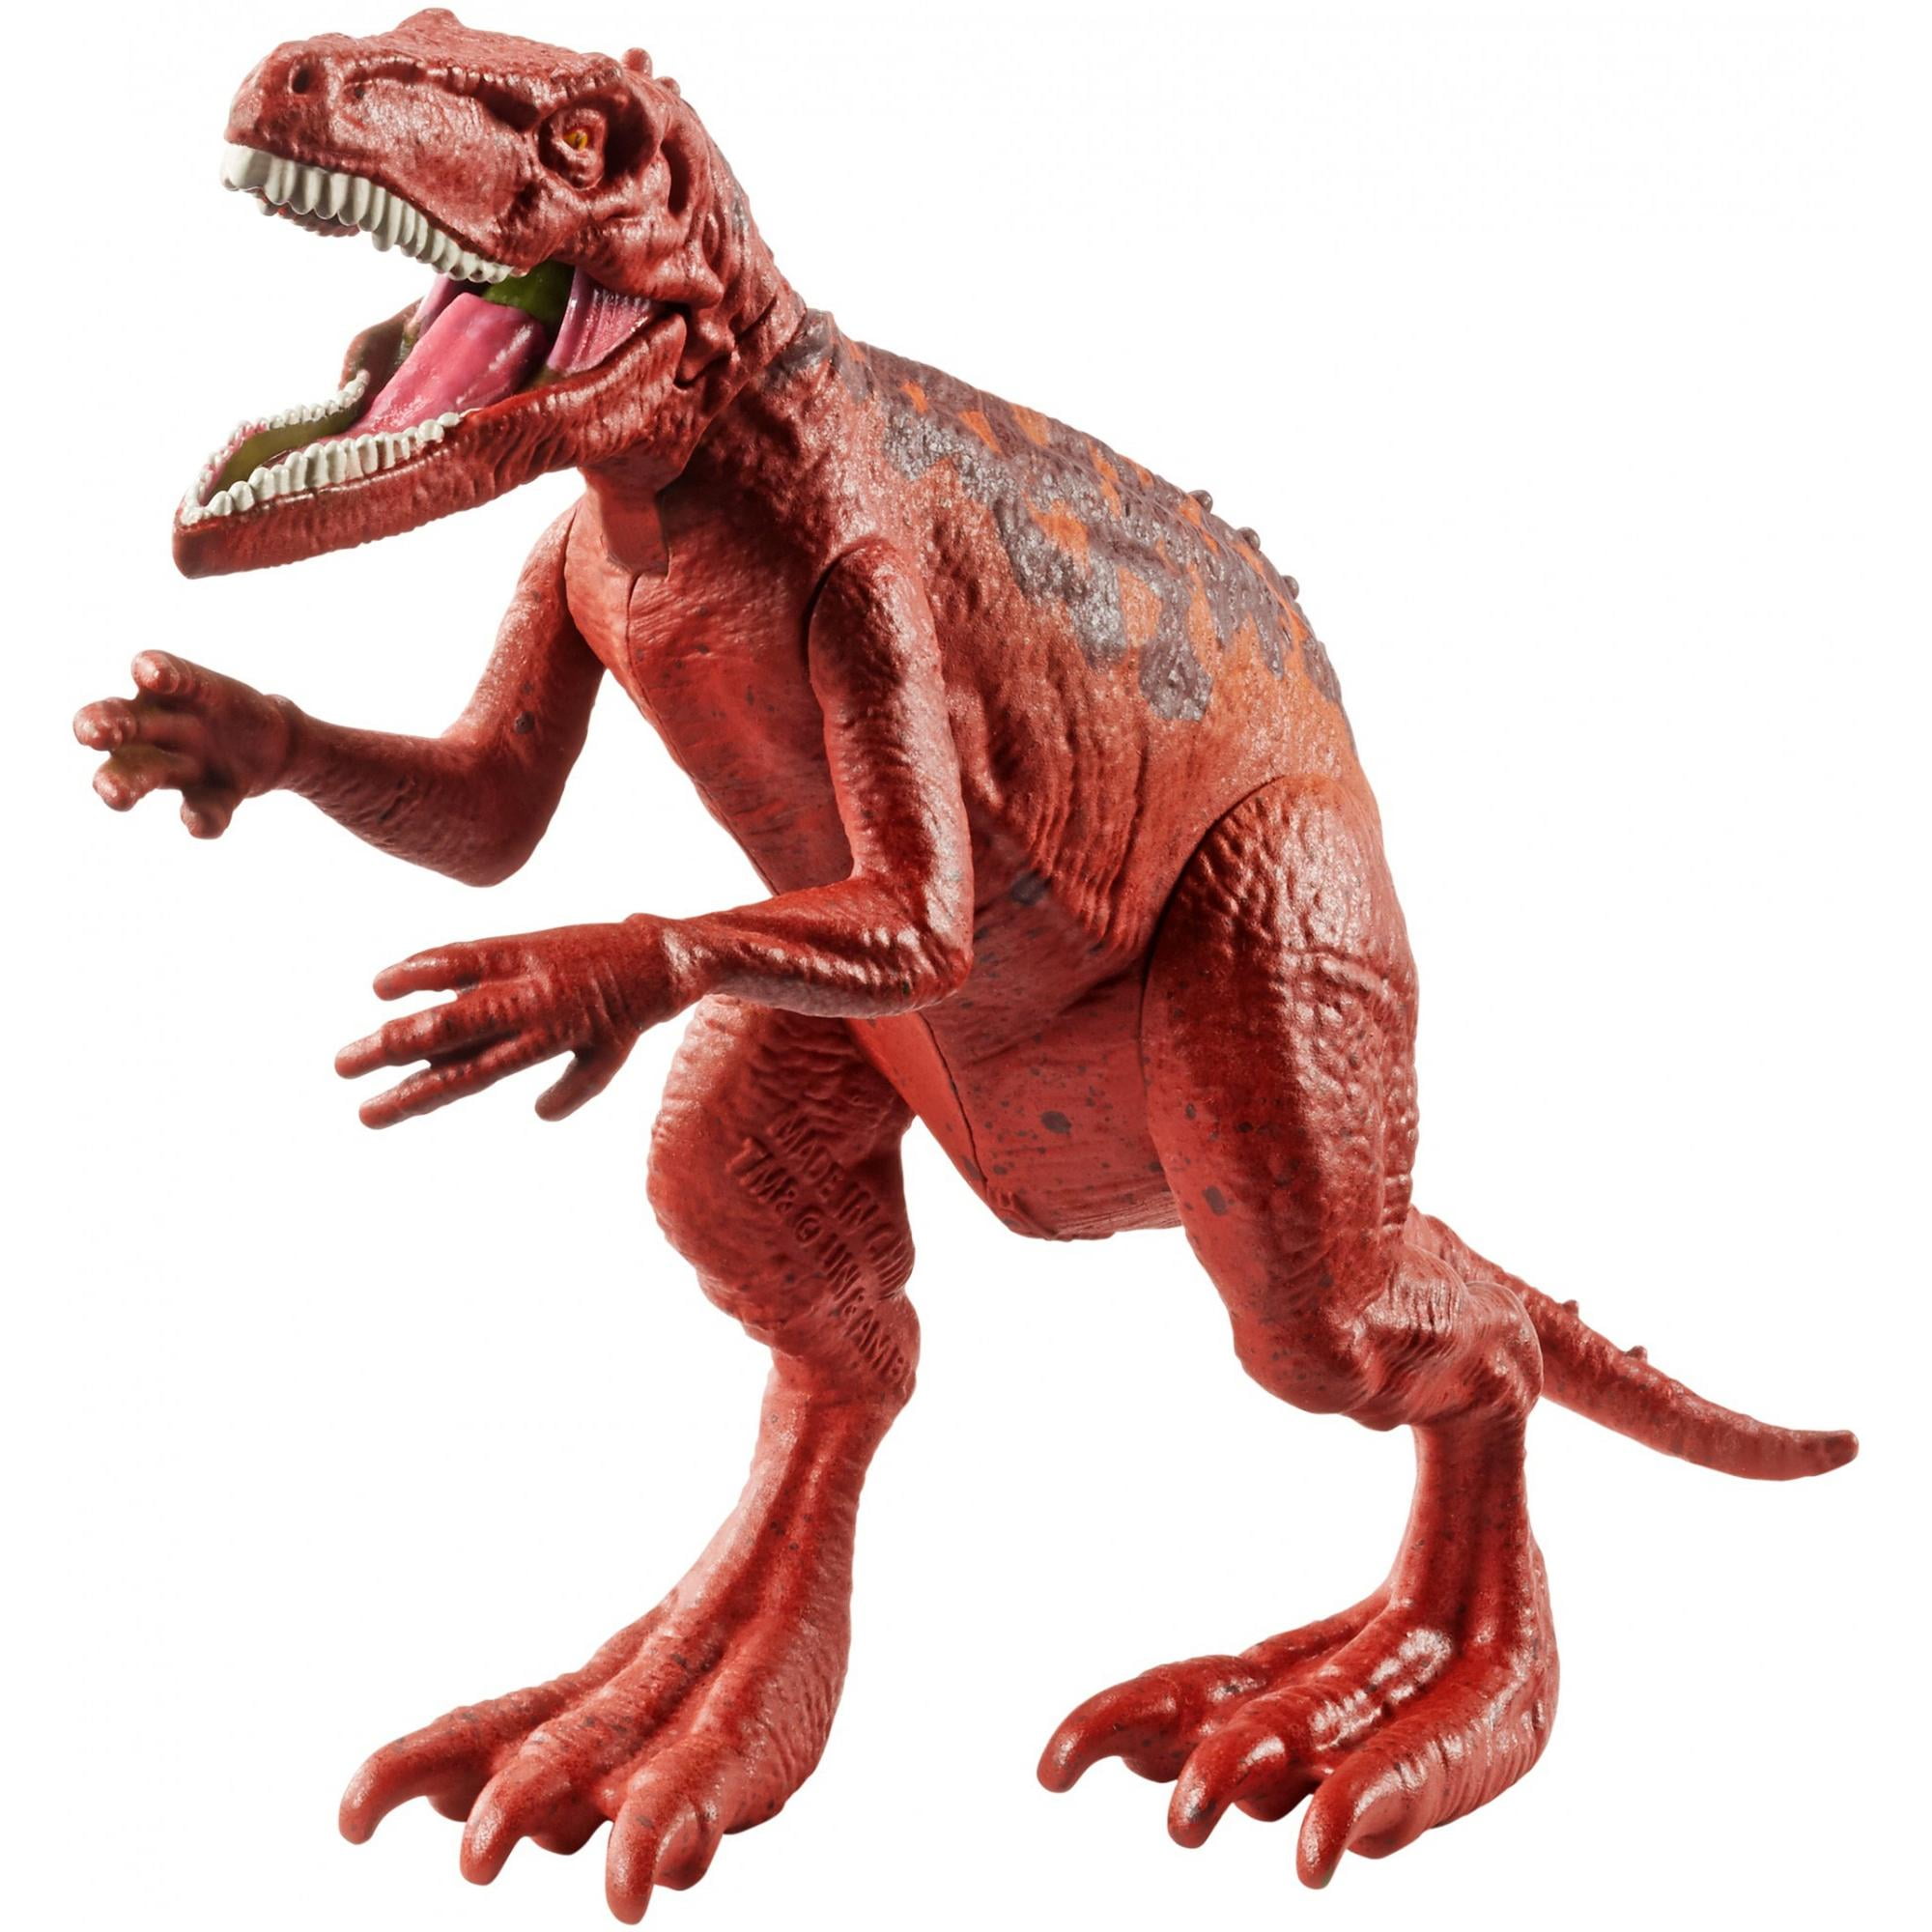 Mattel Jurassic World Battle Damage Herrerasaurus FNB34 for sale online 